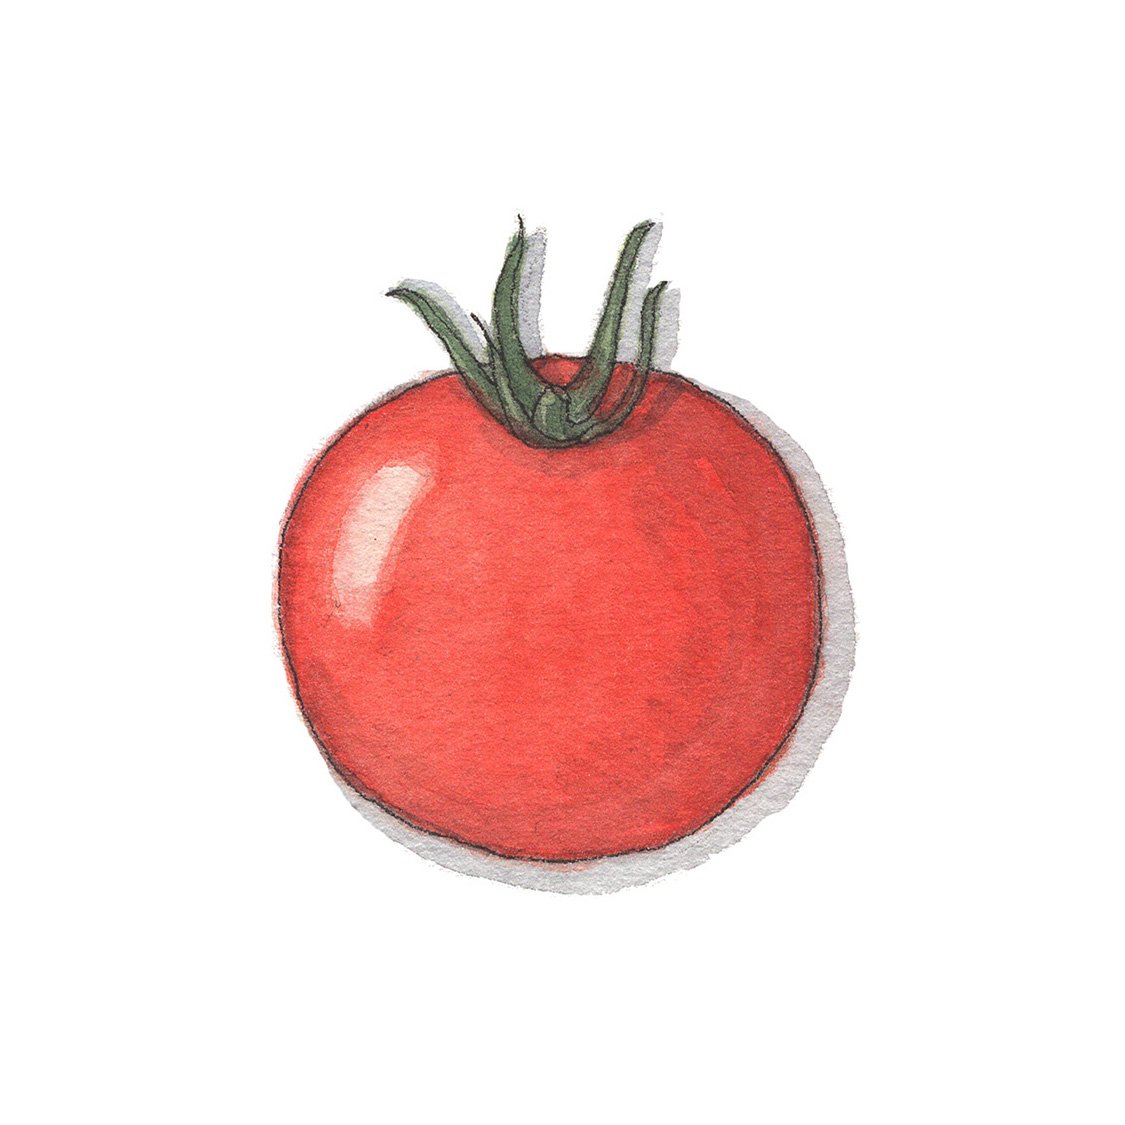 Cocktail / Campari Tomato